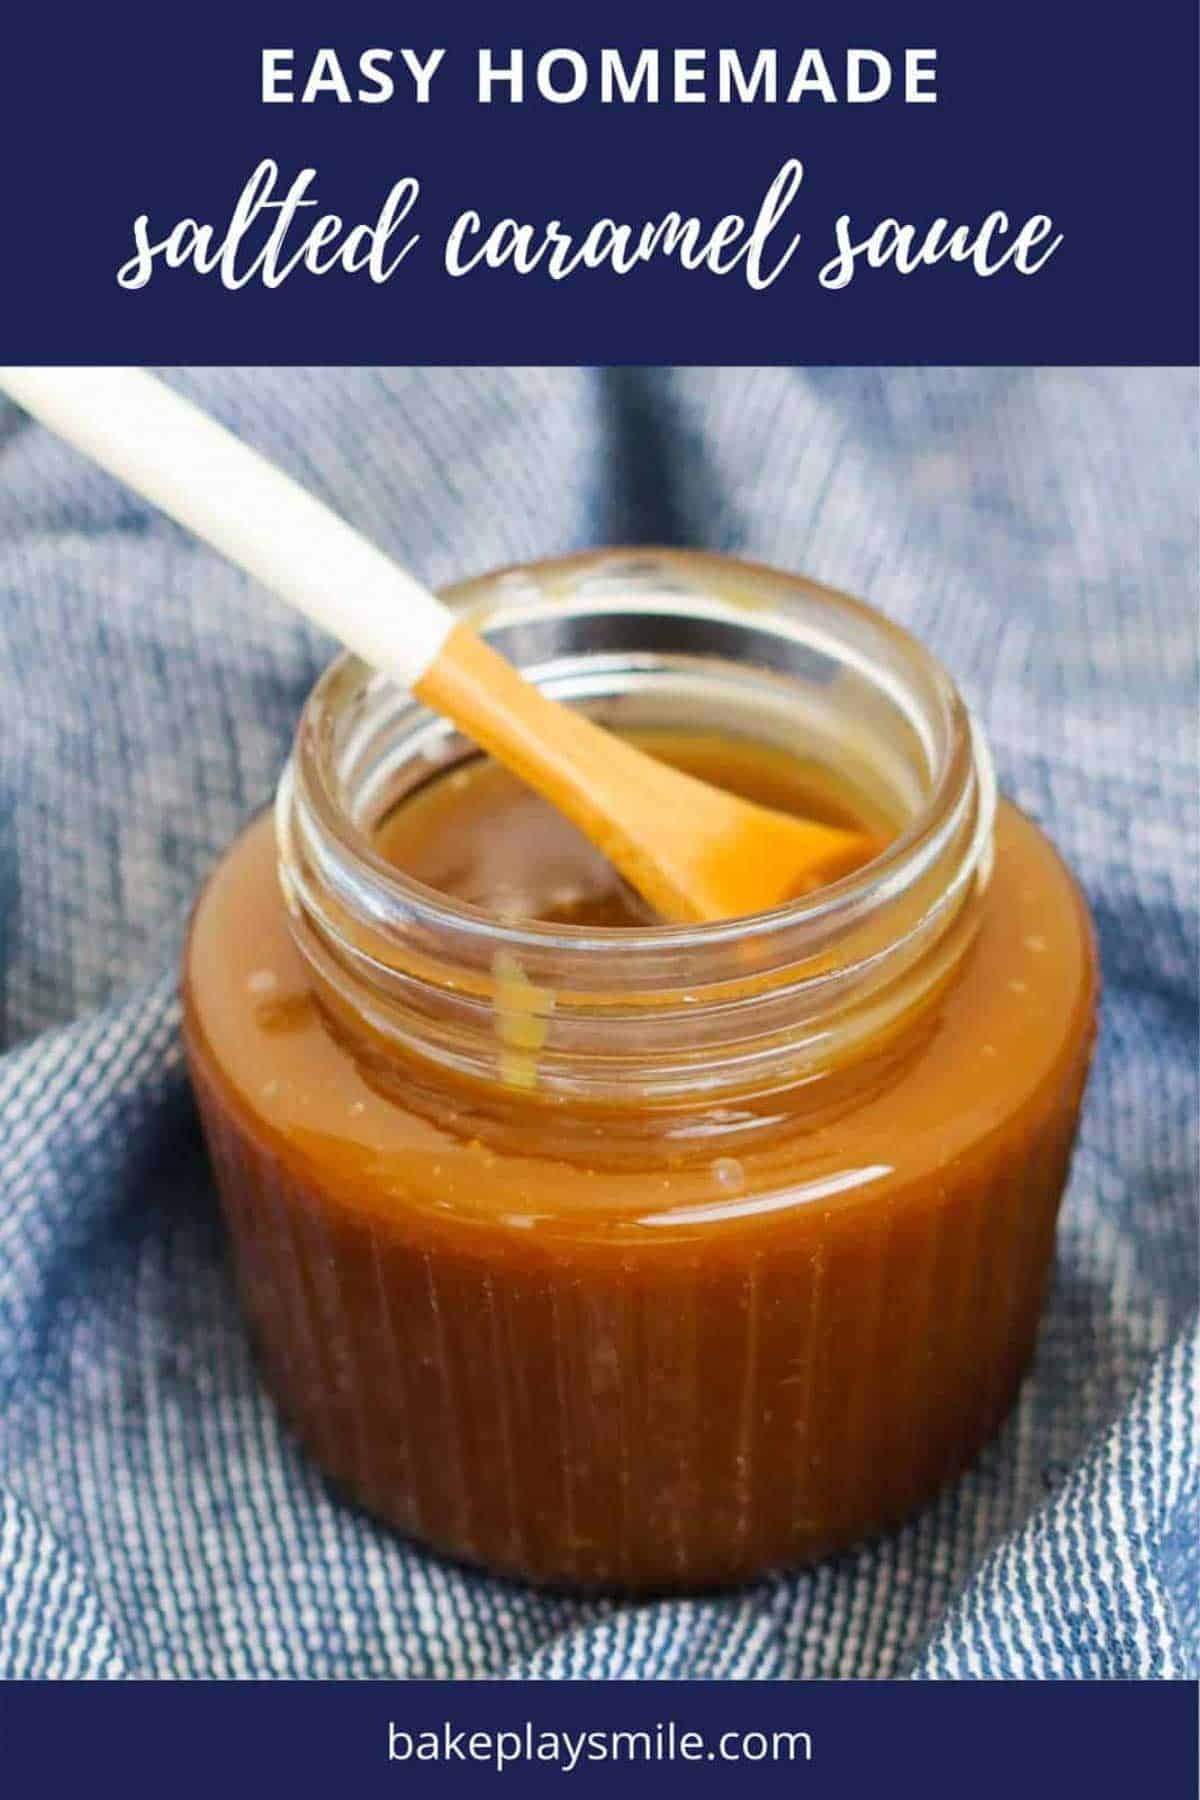 A jar filled with homemade caramel sauce.